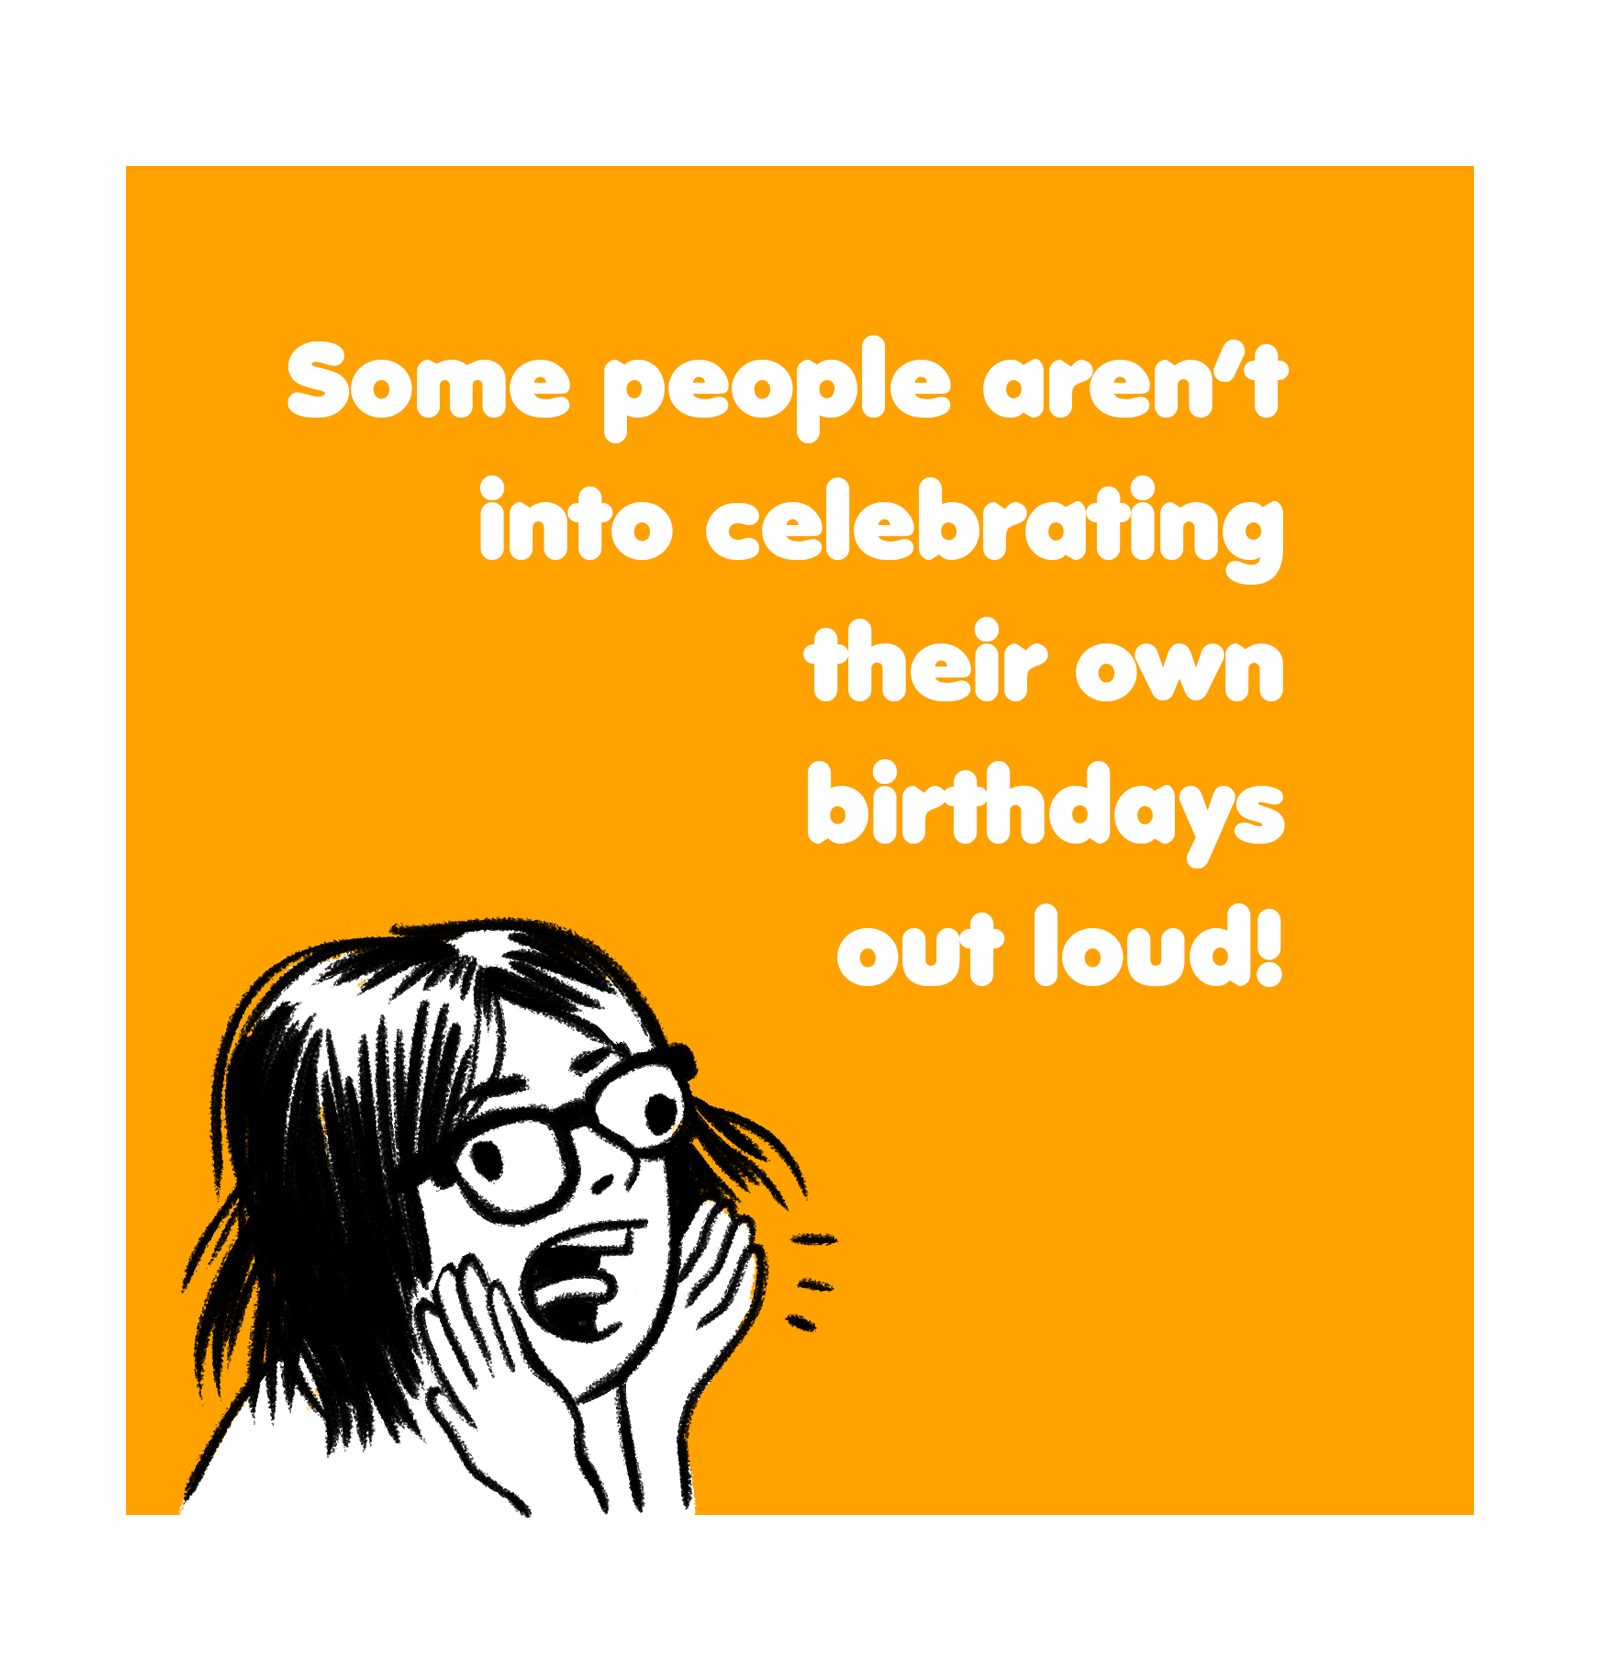 I don't like celebrating my birthday